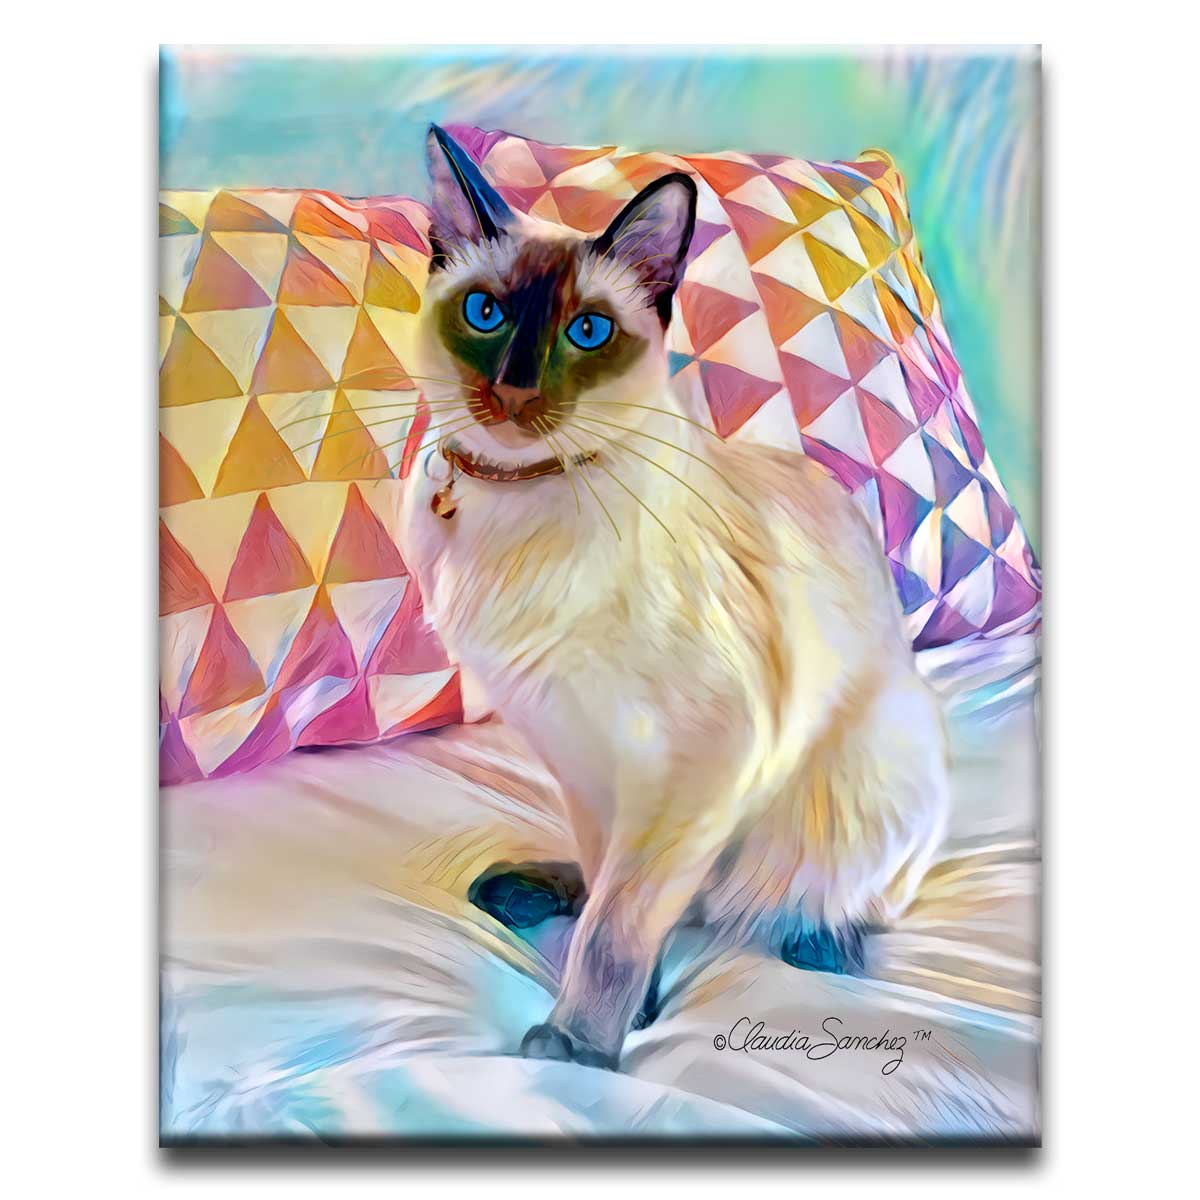 Solomon 8x10" Decorative Ceramic Cat Art Tile by Claudia Sanchez